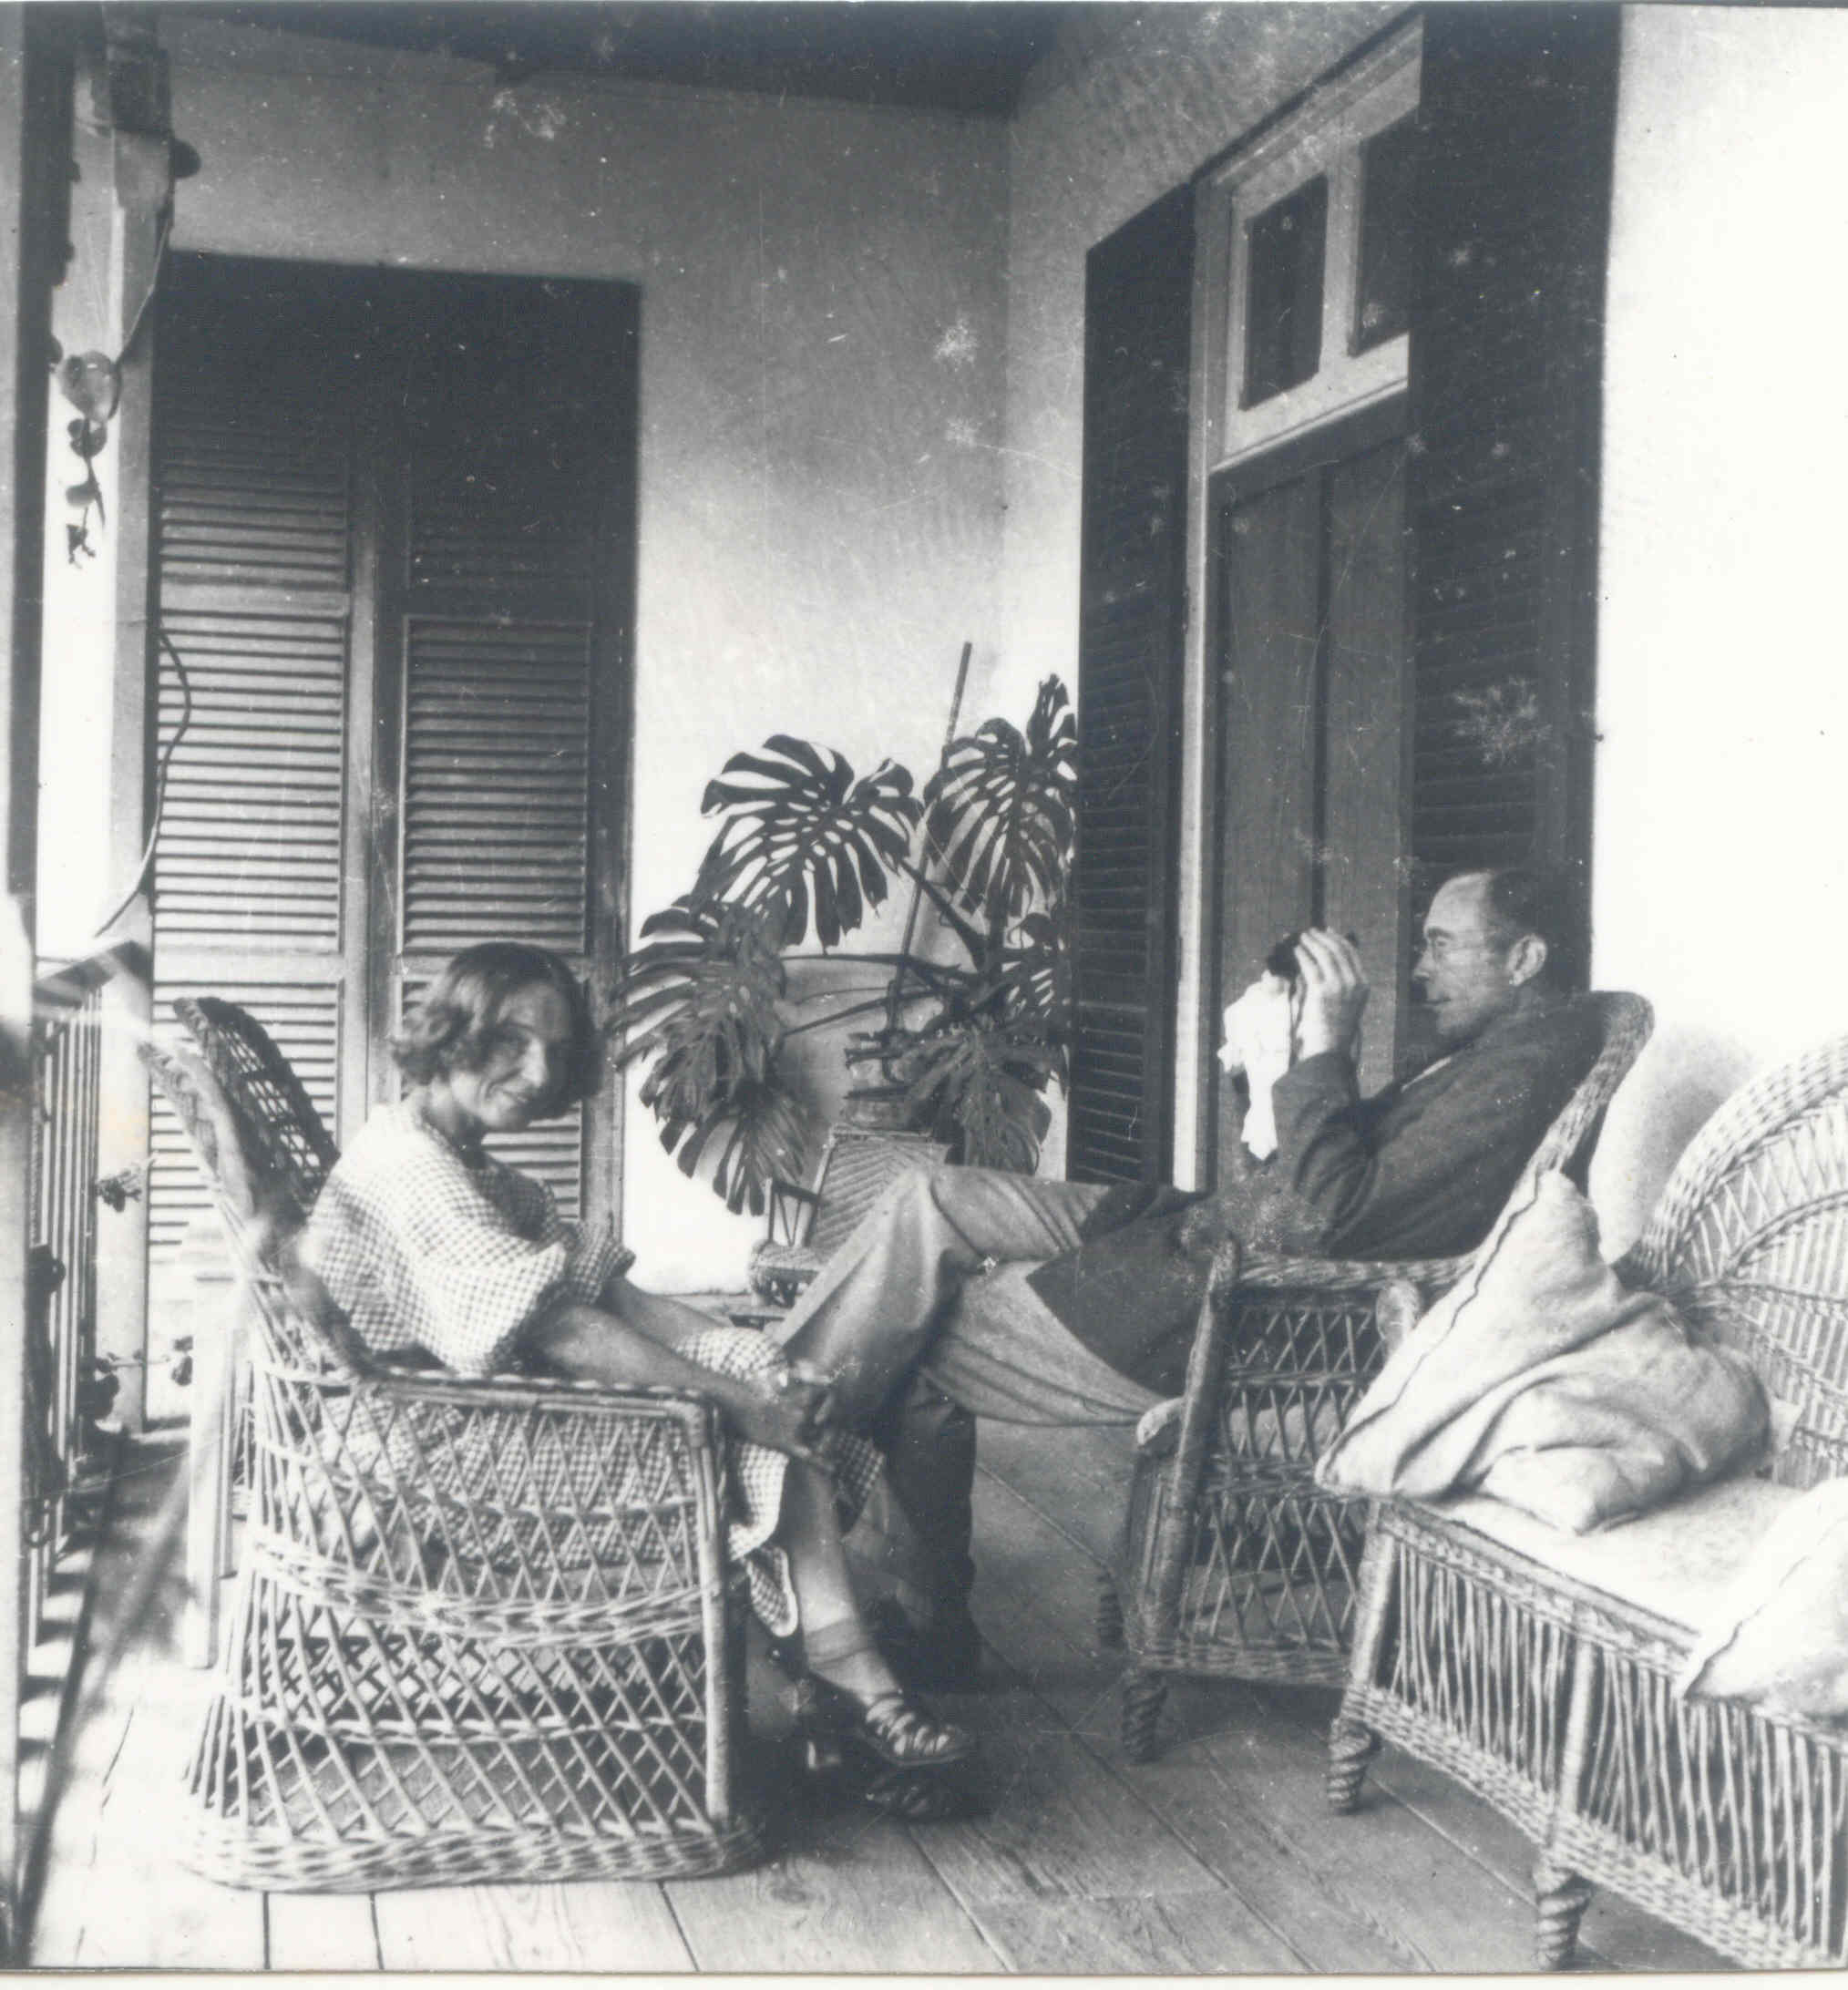 Años 30 del pasado siglo XX. David John Leacock y su primera esposa, Jessie, sentados en su casa de Becerril de Guía, lugar en el que recibieron y alojaron después a su amigo Bertrand Russell, premio Nobel de Literatura 1950.